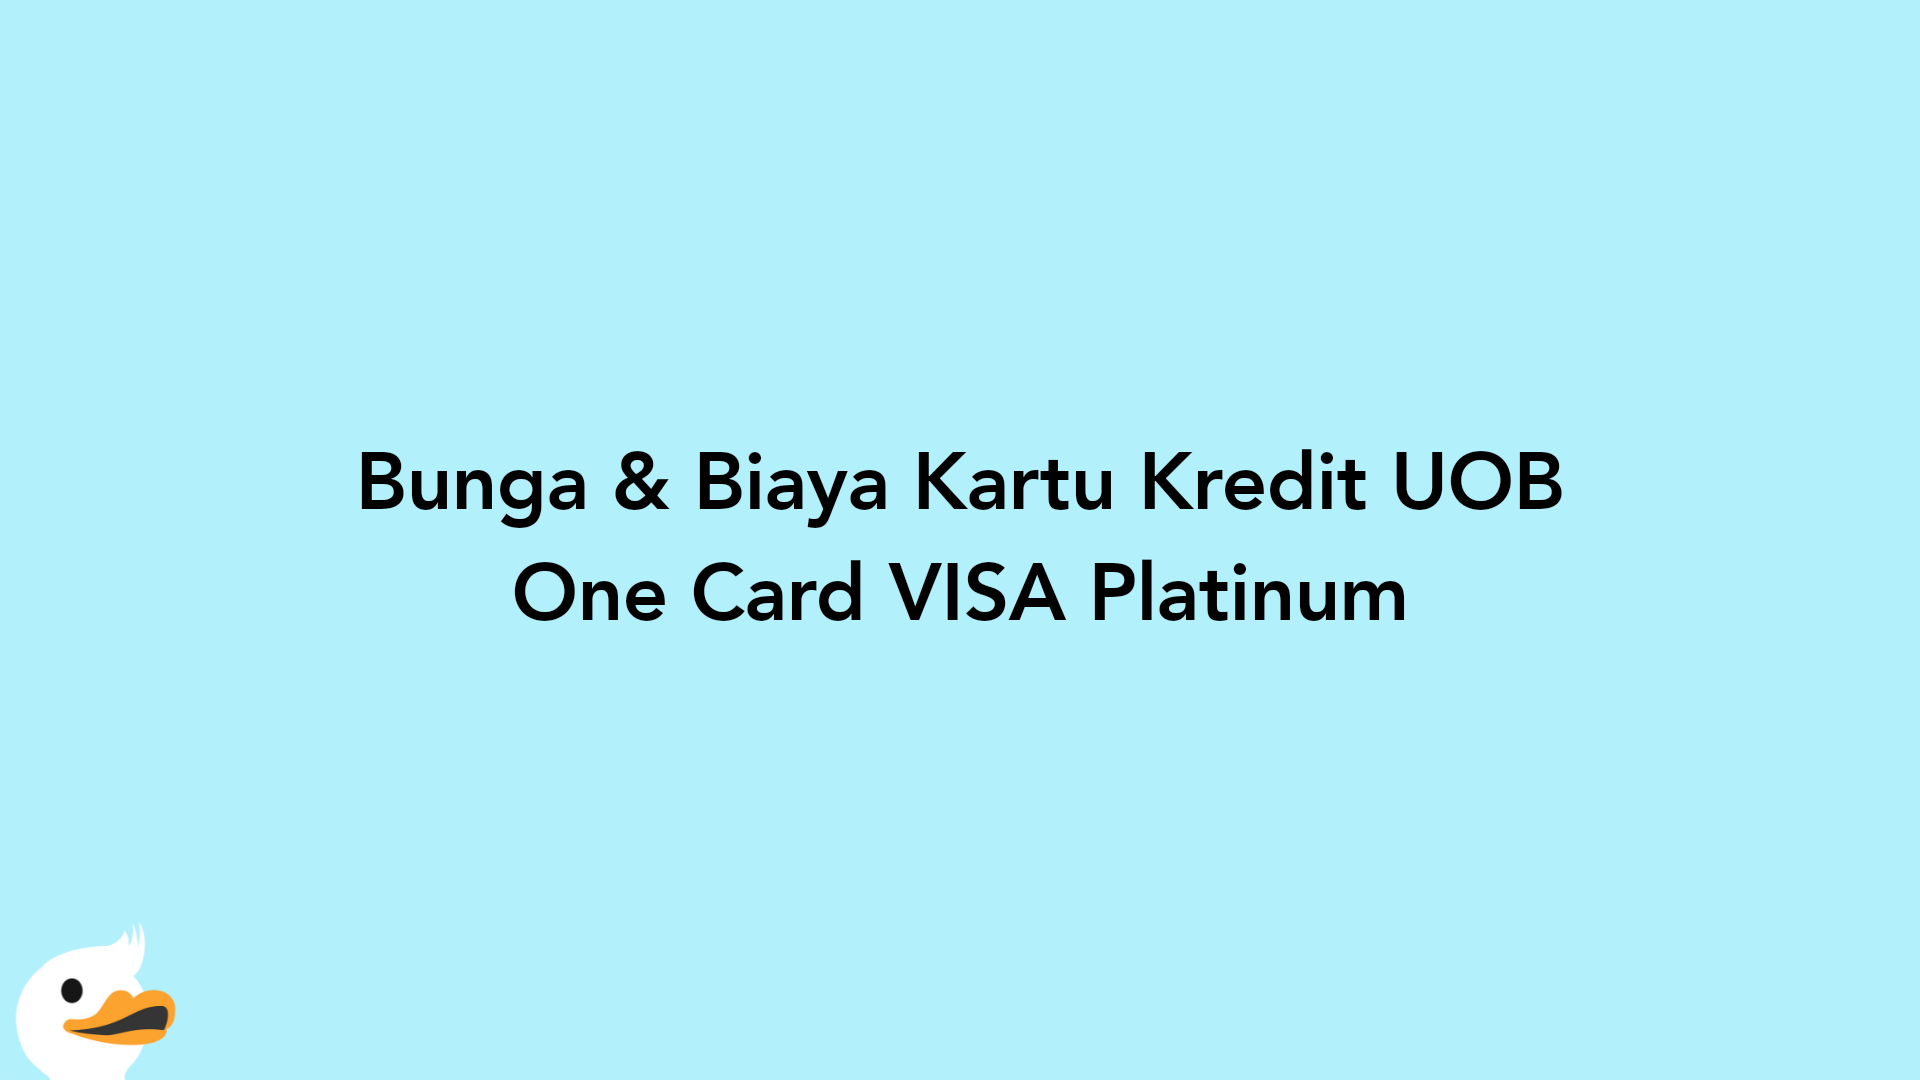 Bunga & Biaya Kartu Kredit UOB One Card VISA Platinum